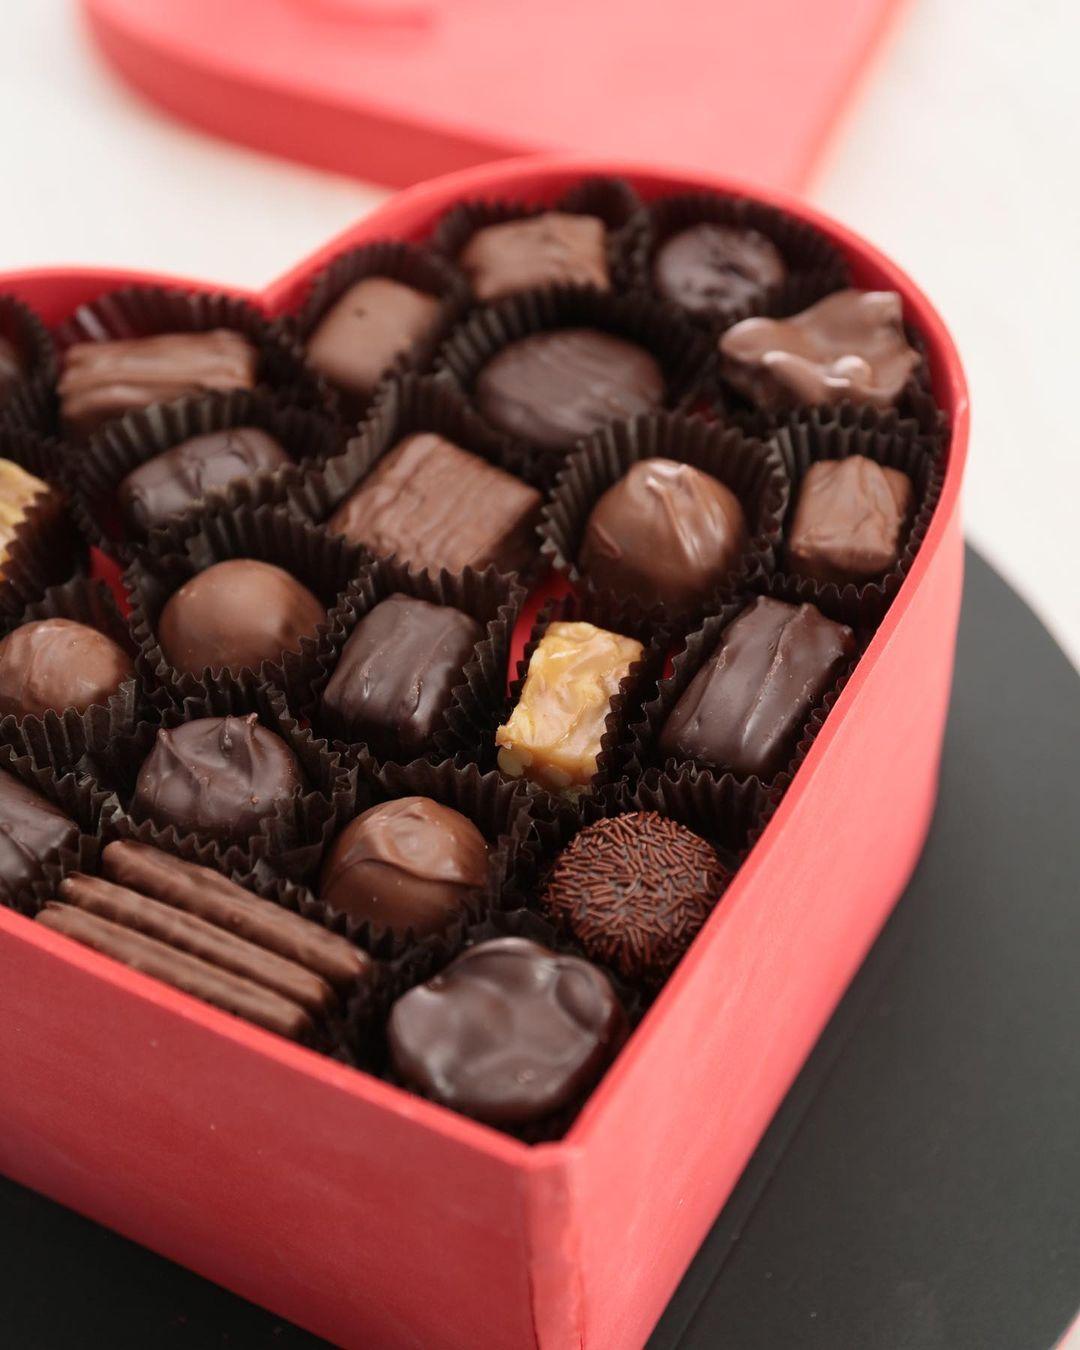 Cake + Box Of Chocolates = This Valentine’s Day treat! 🎂🍫